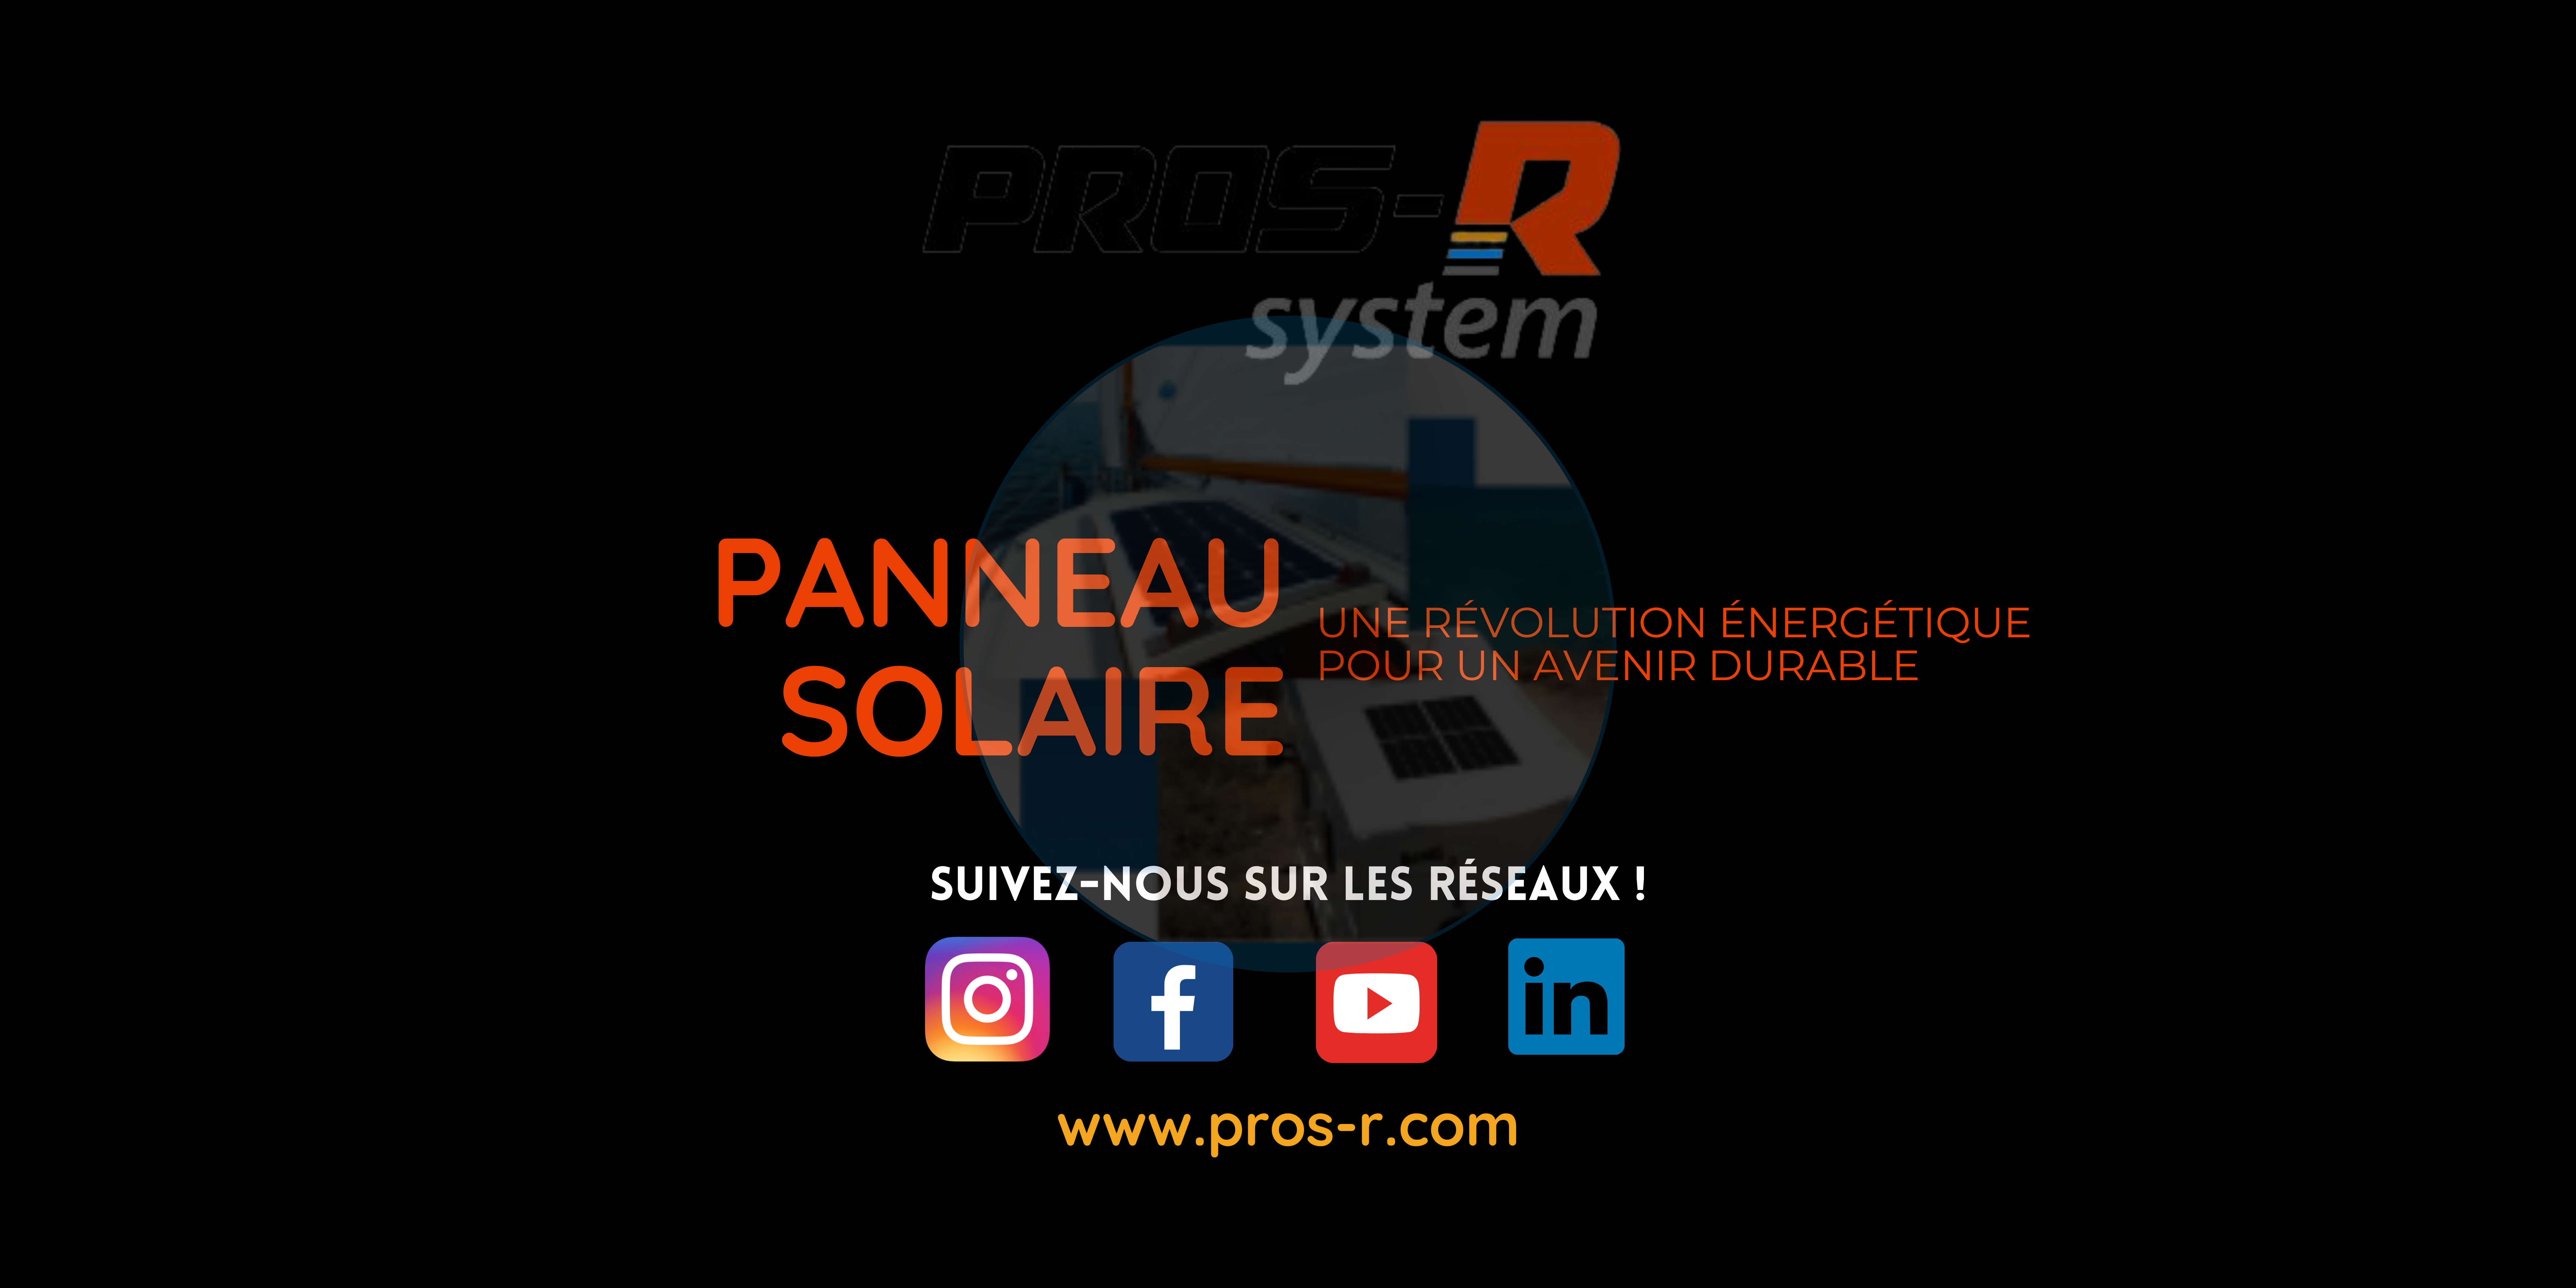 Les panneaux solaires : une révolution énergétique pour un avenir durable PROS-R System